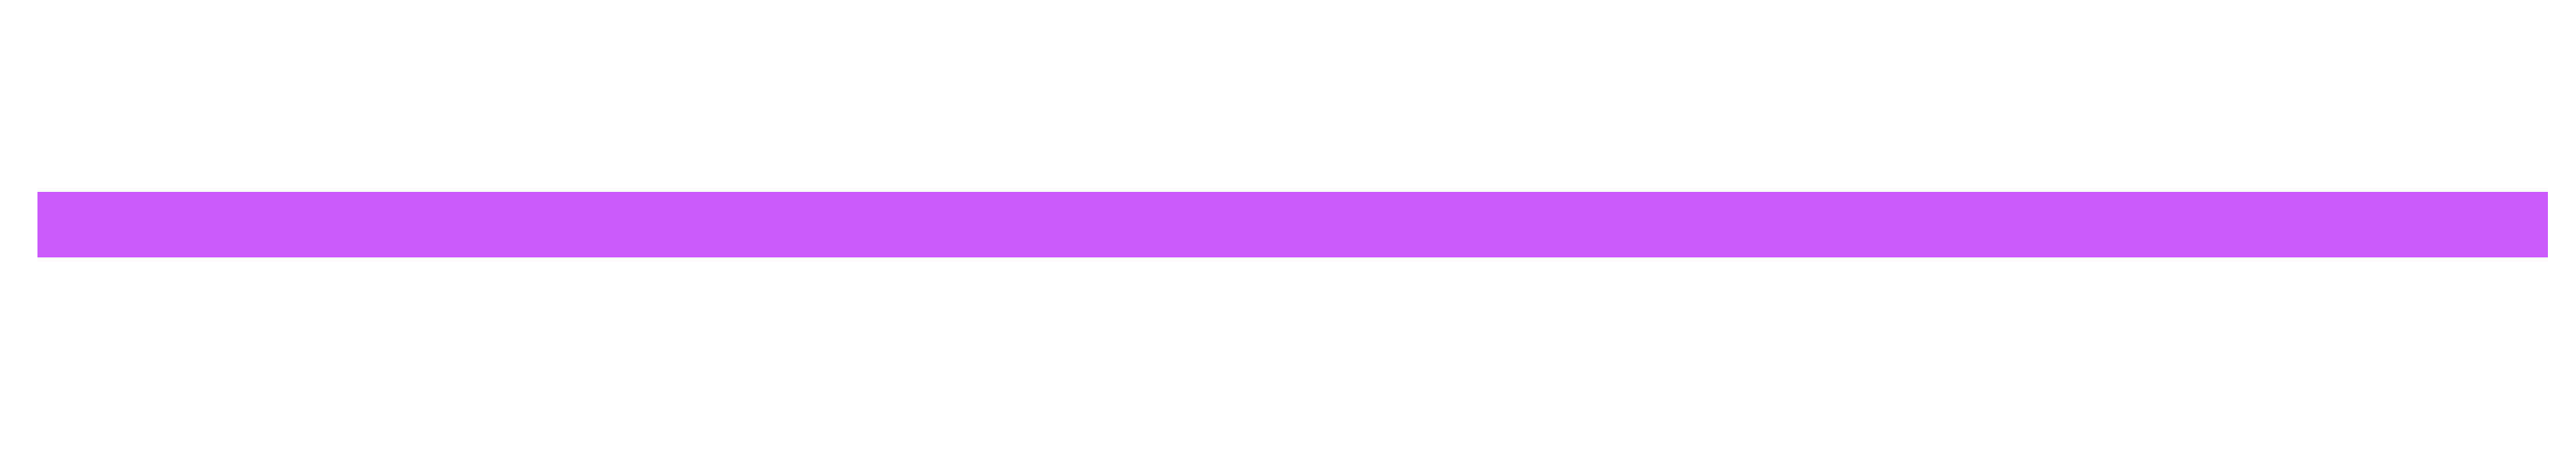 Горизонтально удлиненный. Фиолетовая полоска. Фиолетовая полоска на прозрачном фоне. Полоска фиолетовая полукруг. Бегающая полоска фиолетовым.